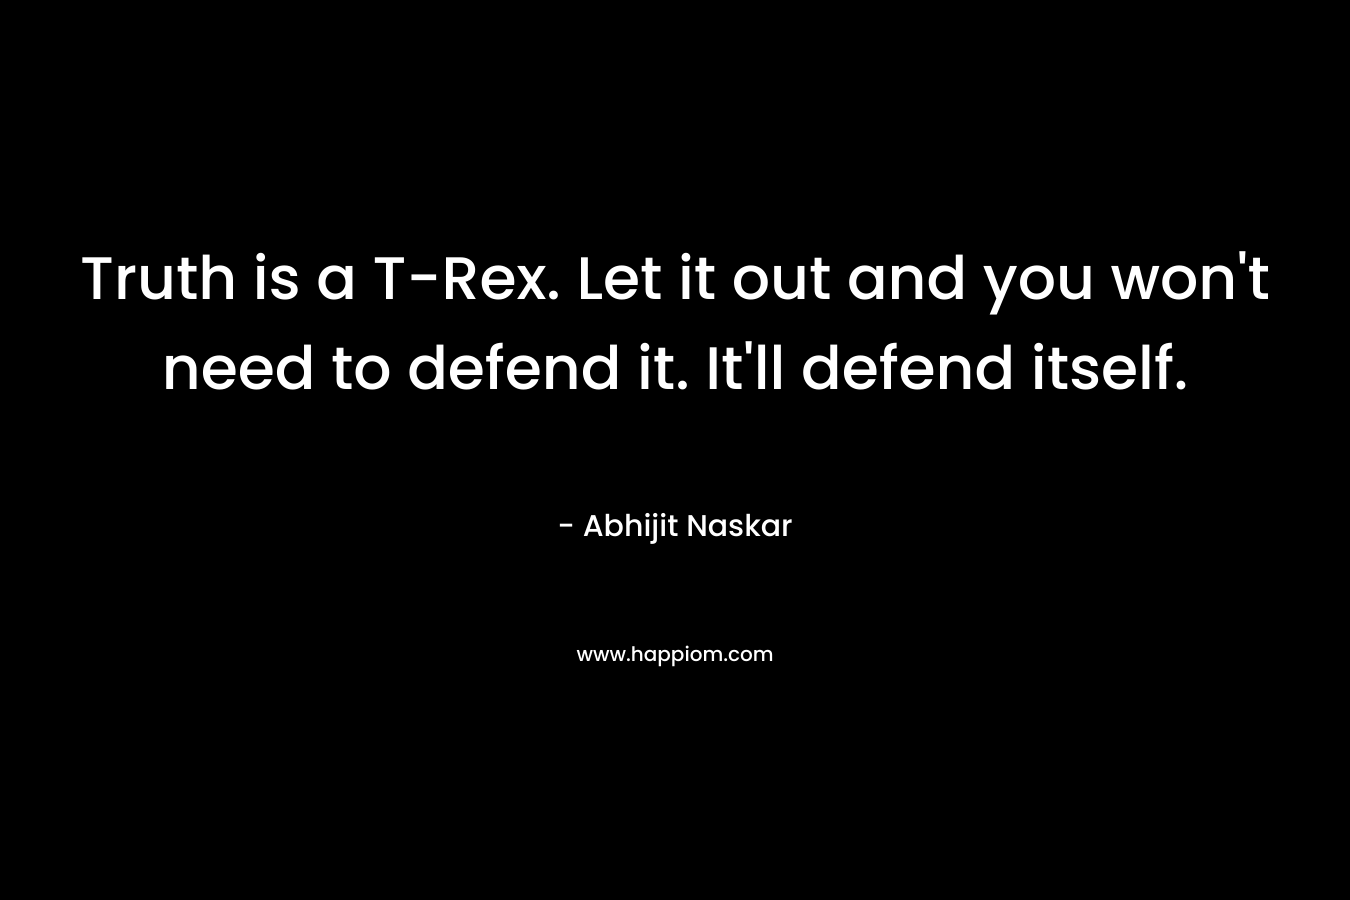 Truth is a T-Rex. Let it out and you won't need to defend it. It'll defend itself.